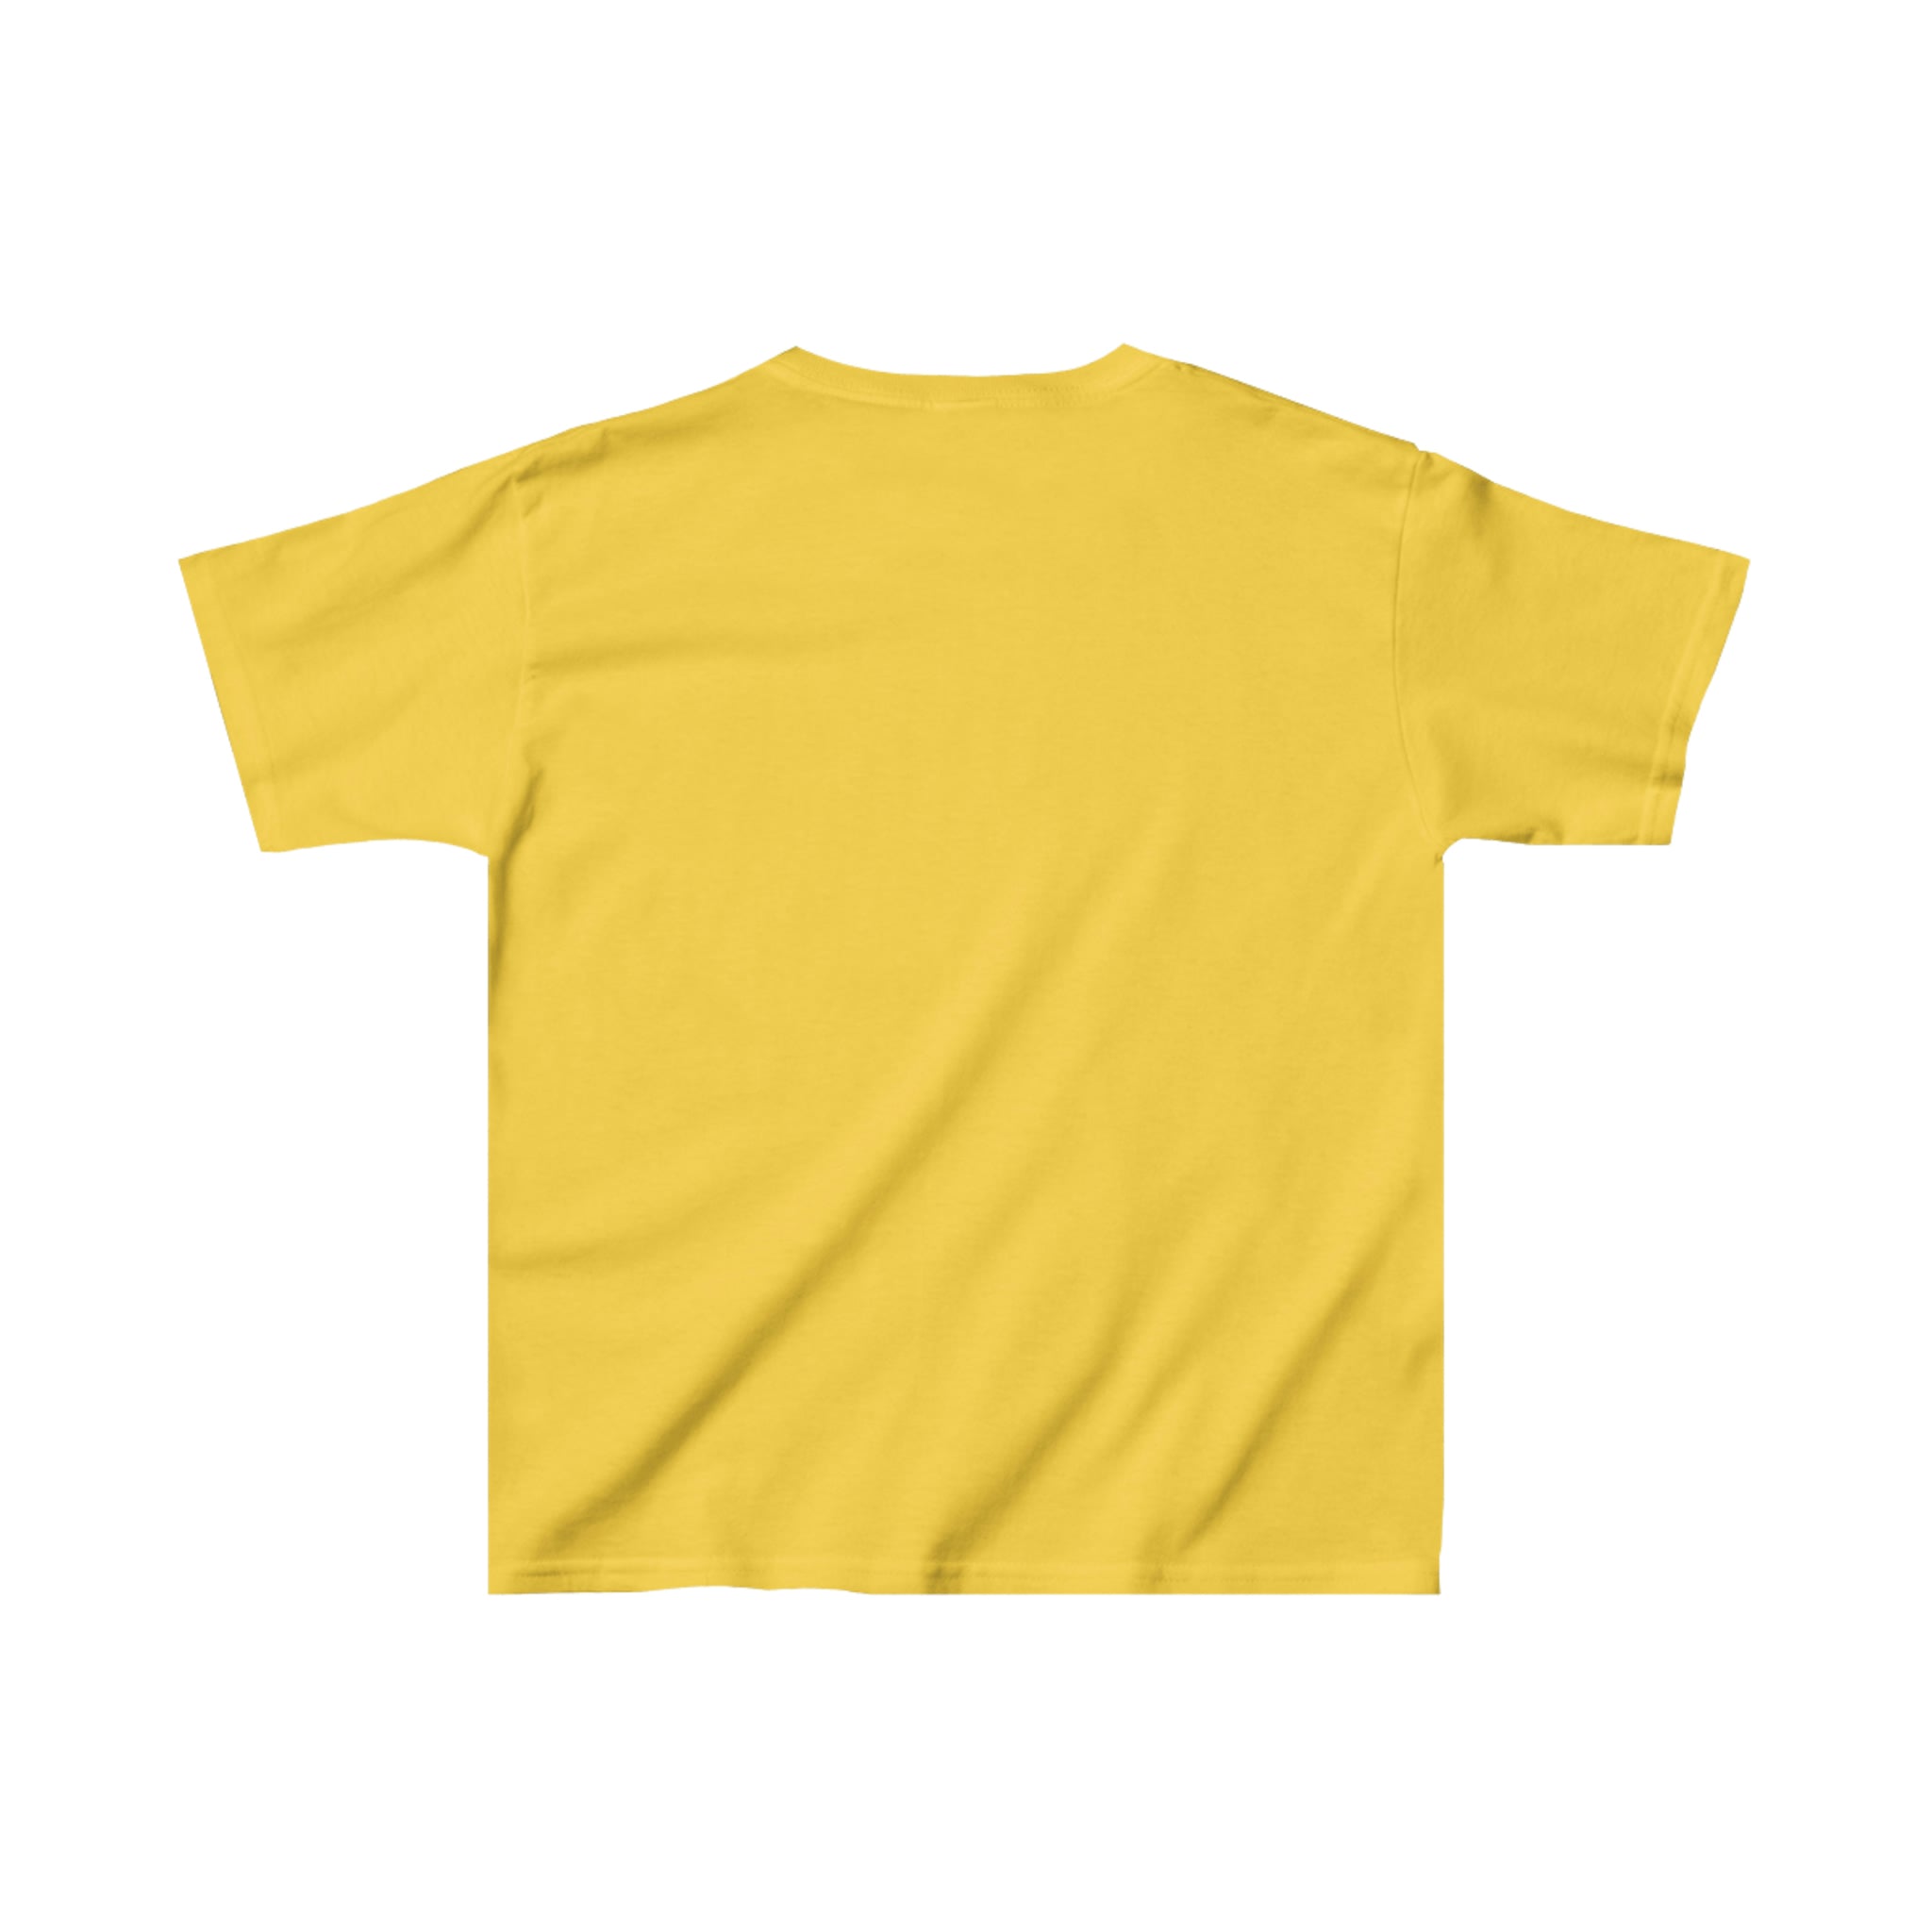 Kamloops Elks T-Shirt (Youth)